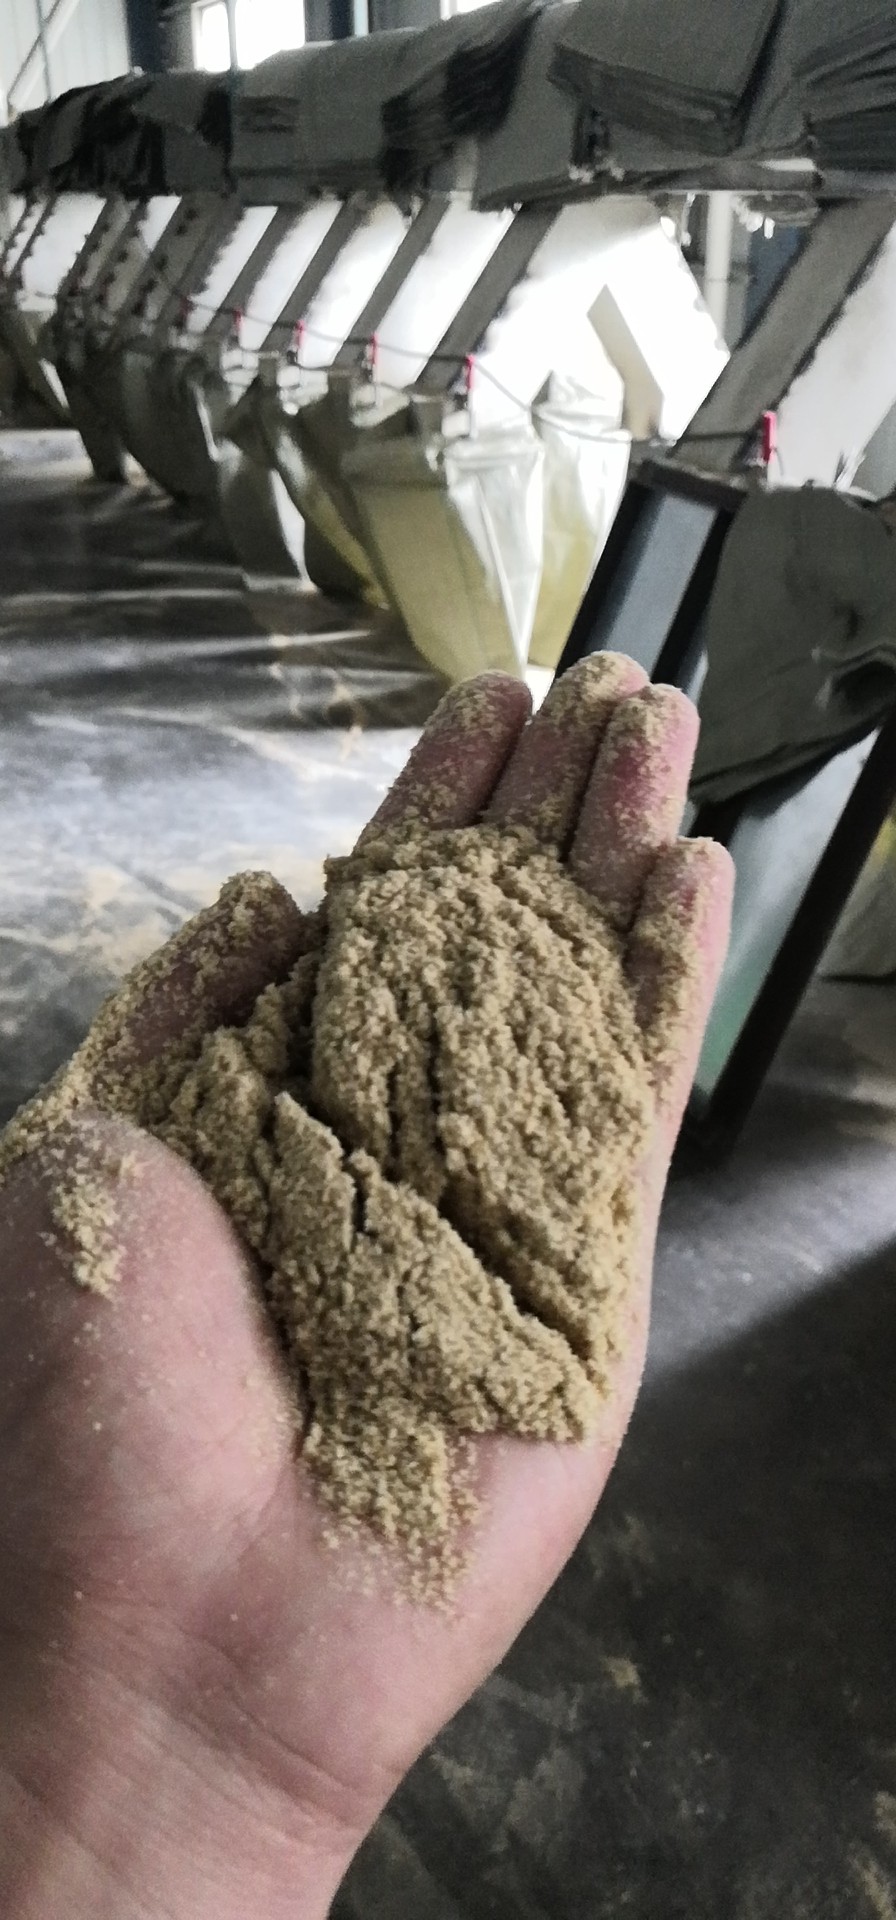 厂家直销米糠 优质米糠 优质稻糠 批发米糠